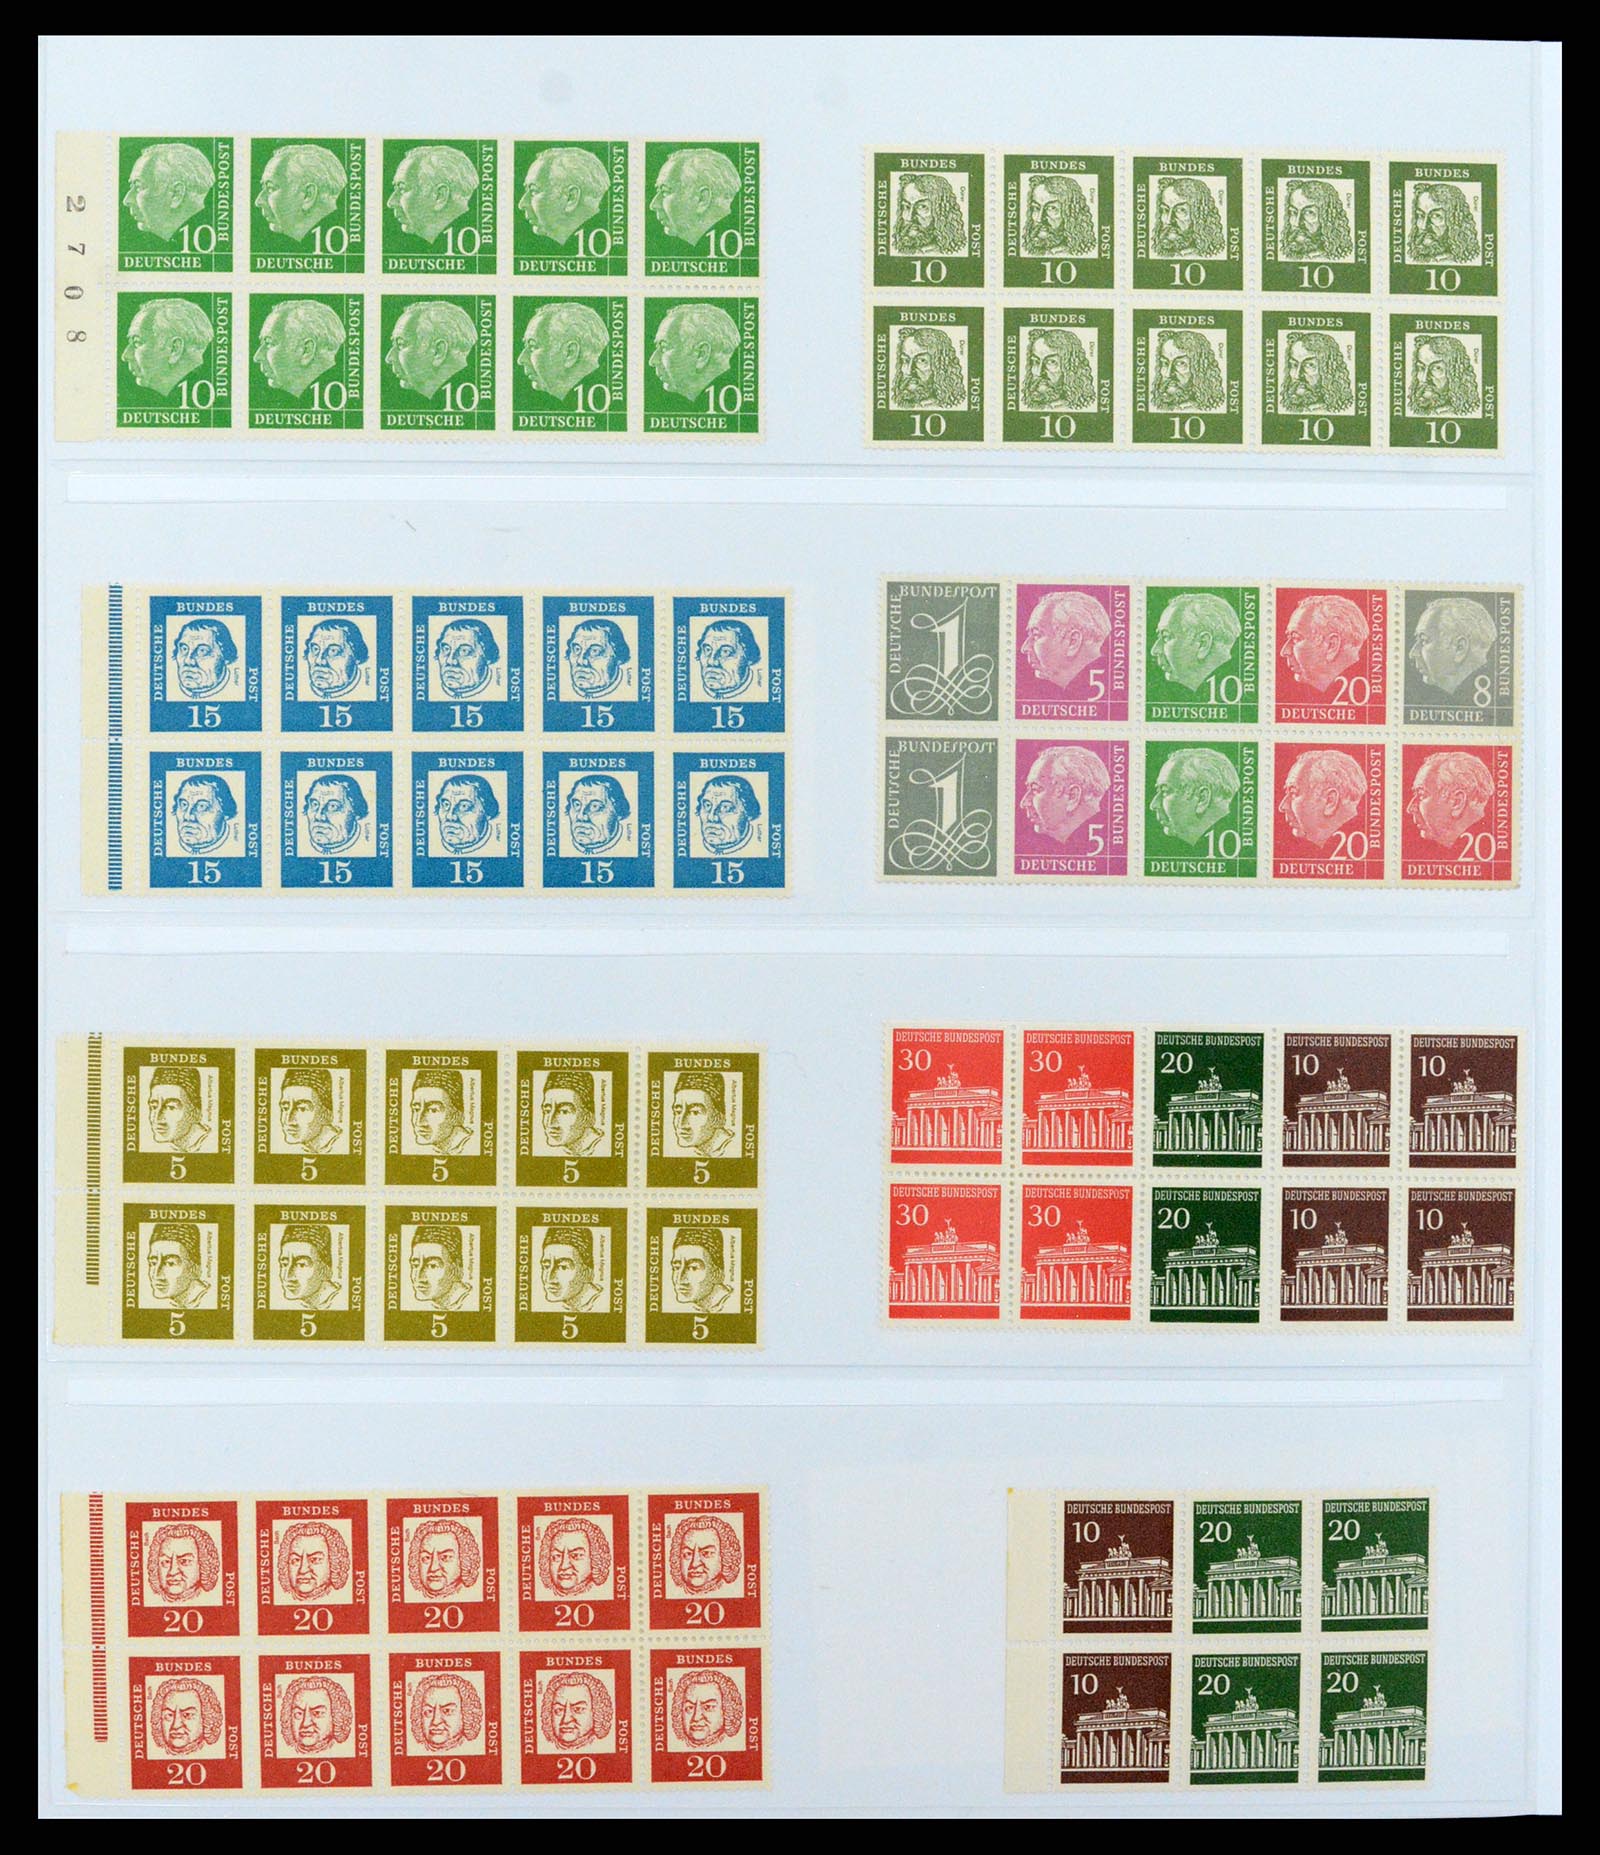 37336 018 - Postzegelverzameling 37336 Bundespost combinaties 1955-1980.